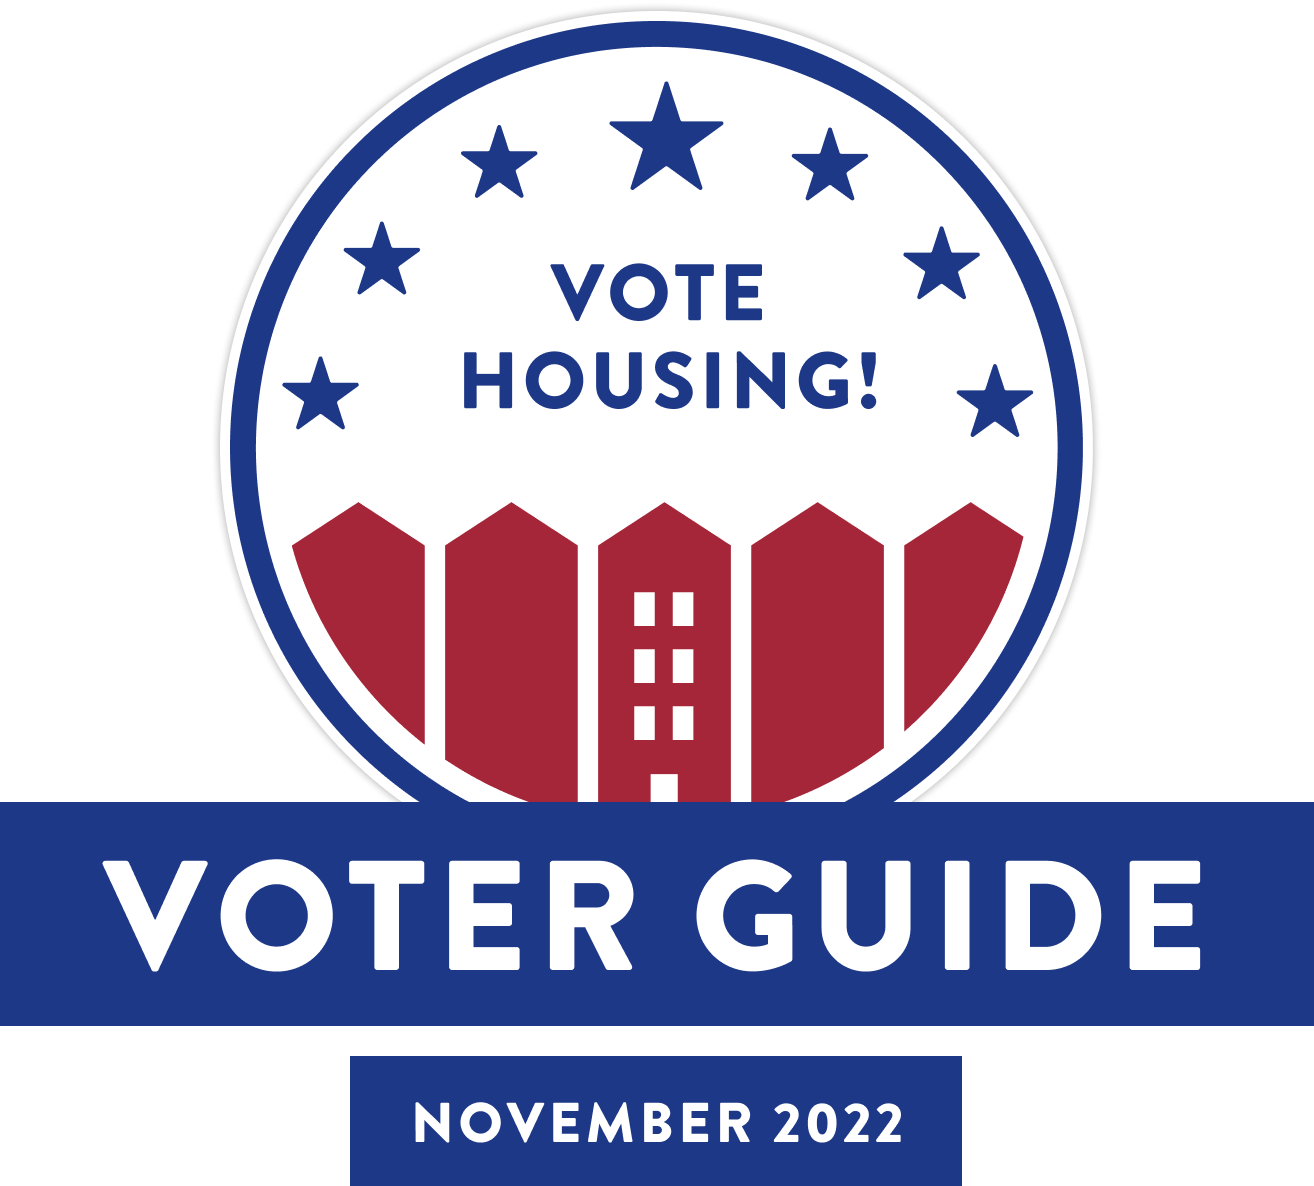 vote housing: voter guide november 2022